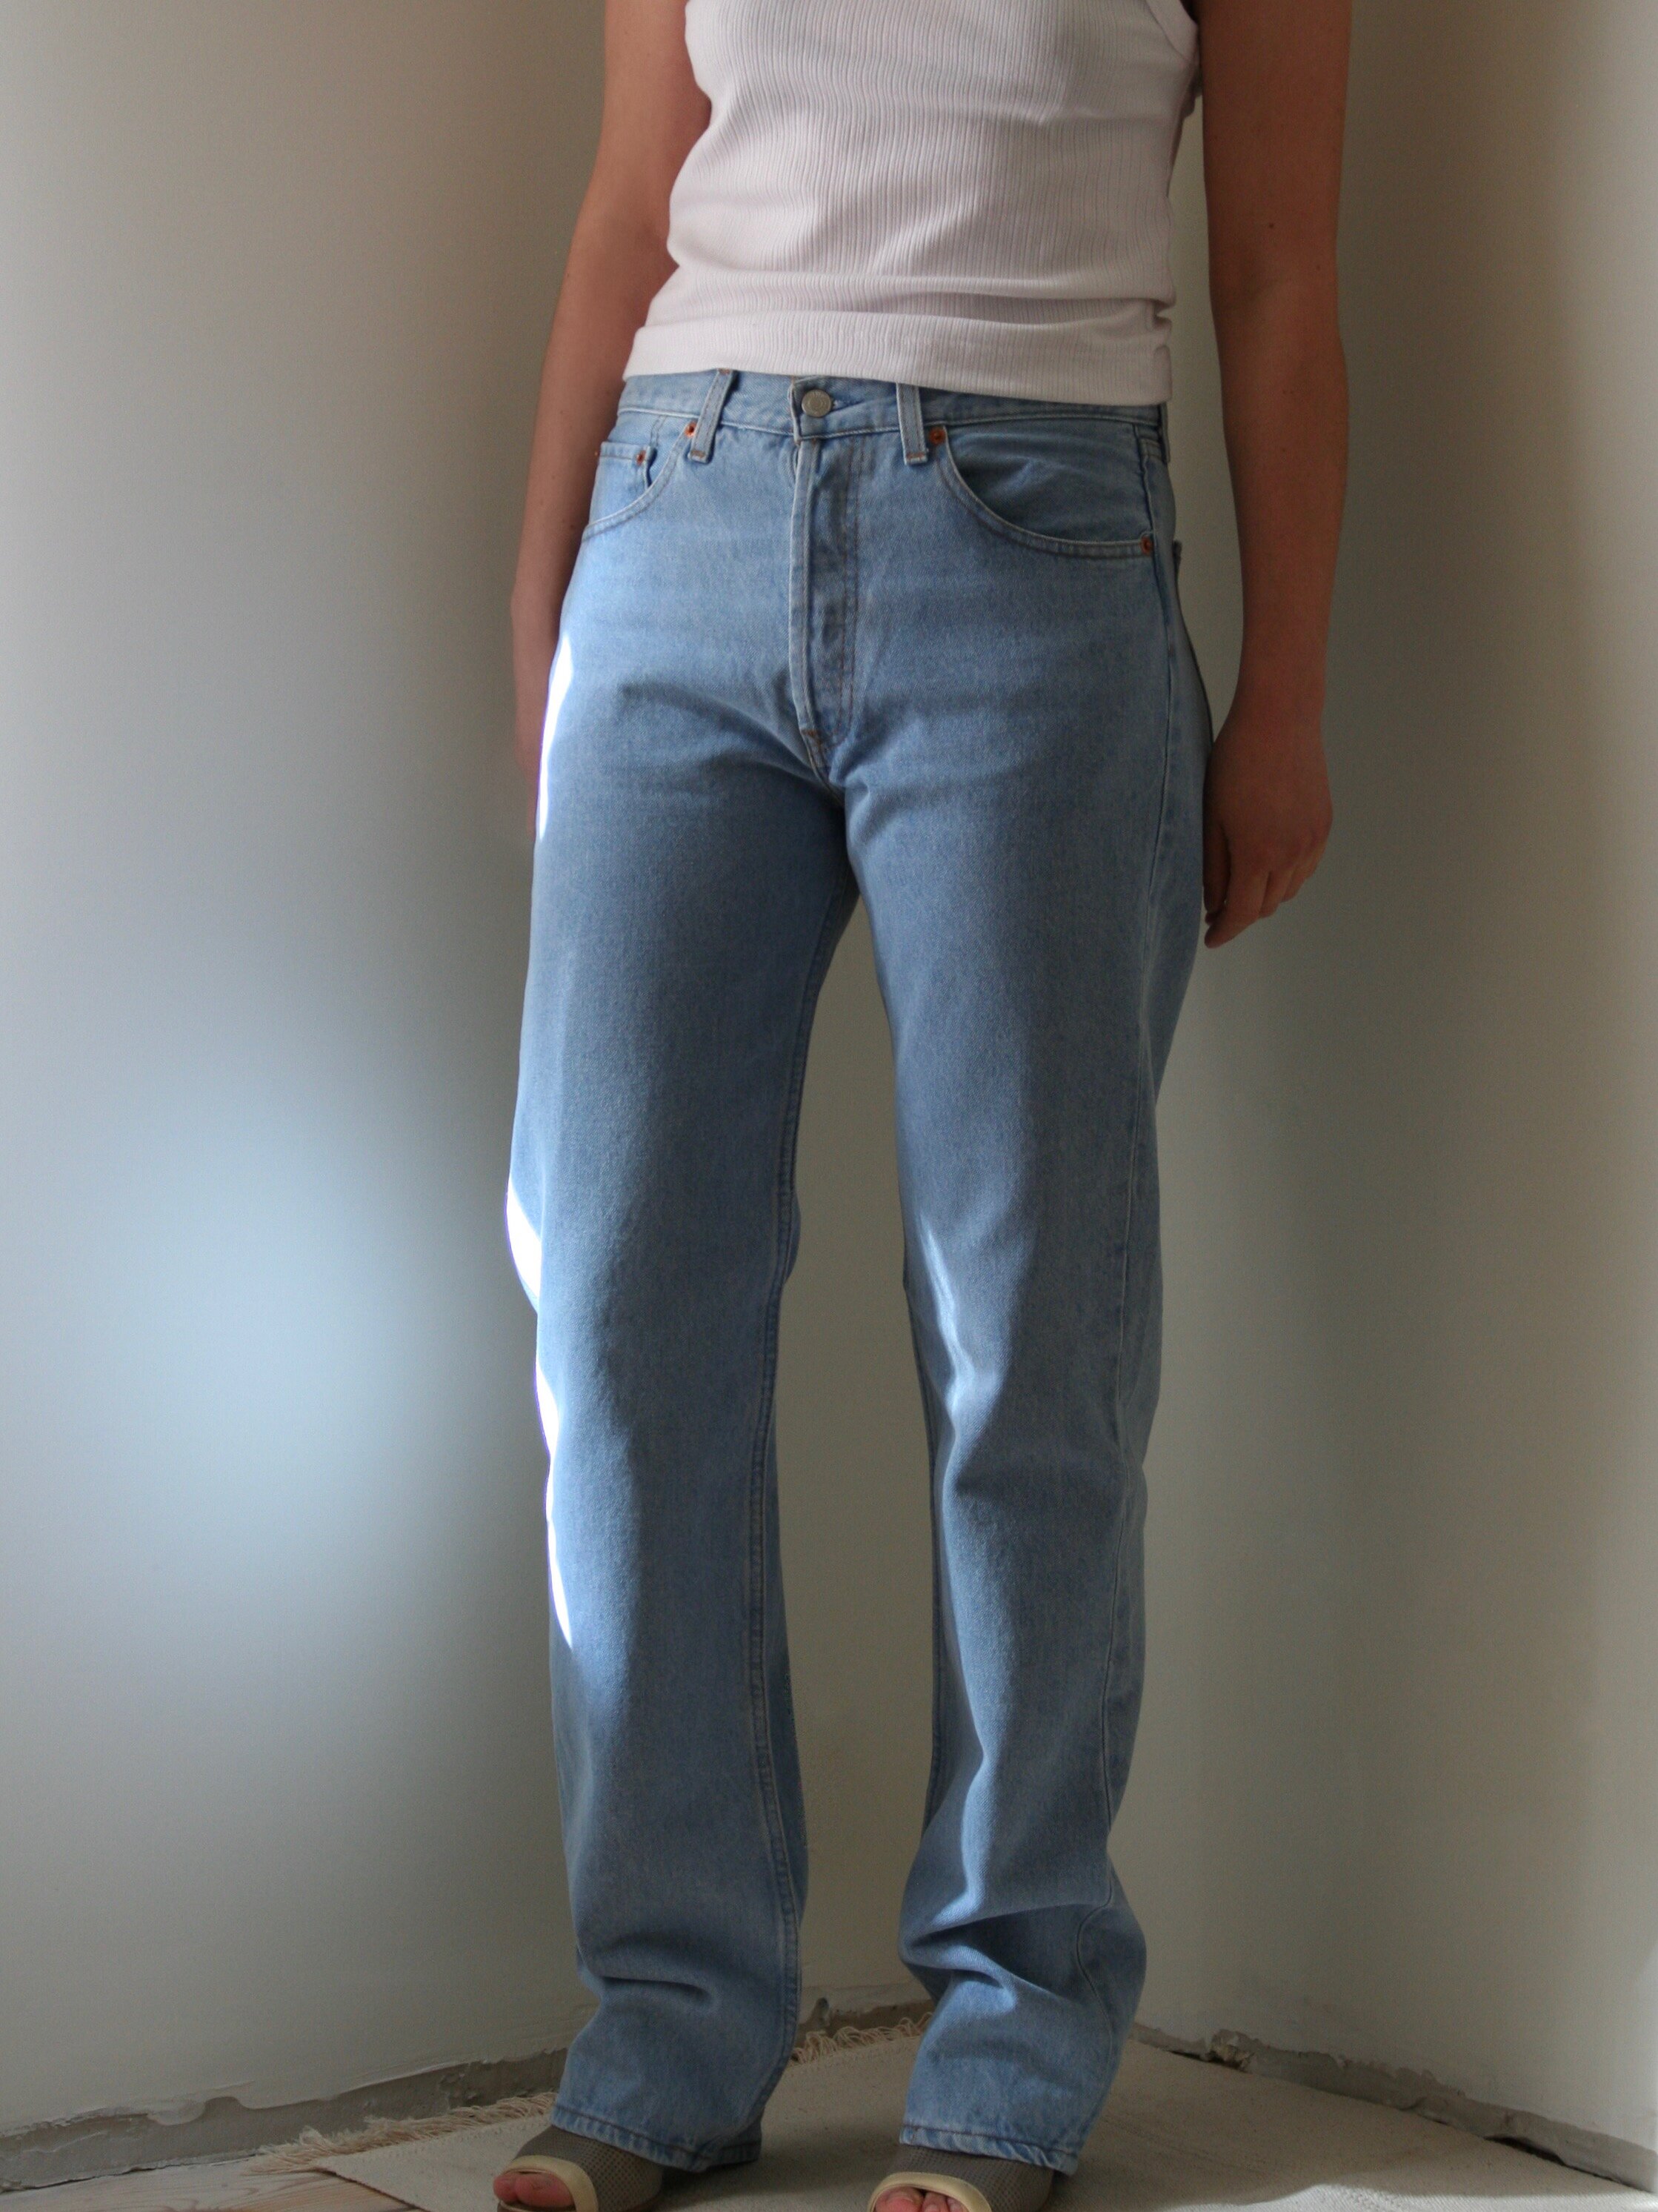 levi 501 jeans 1990s